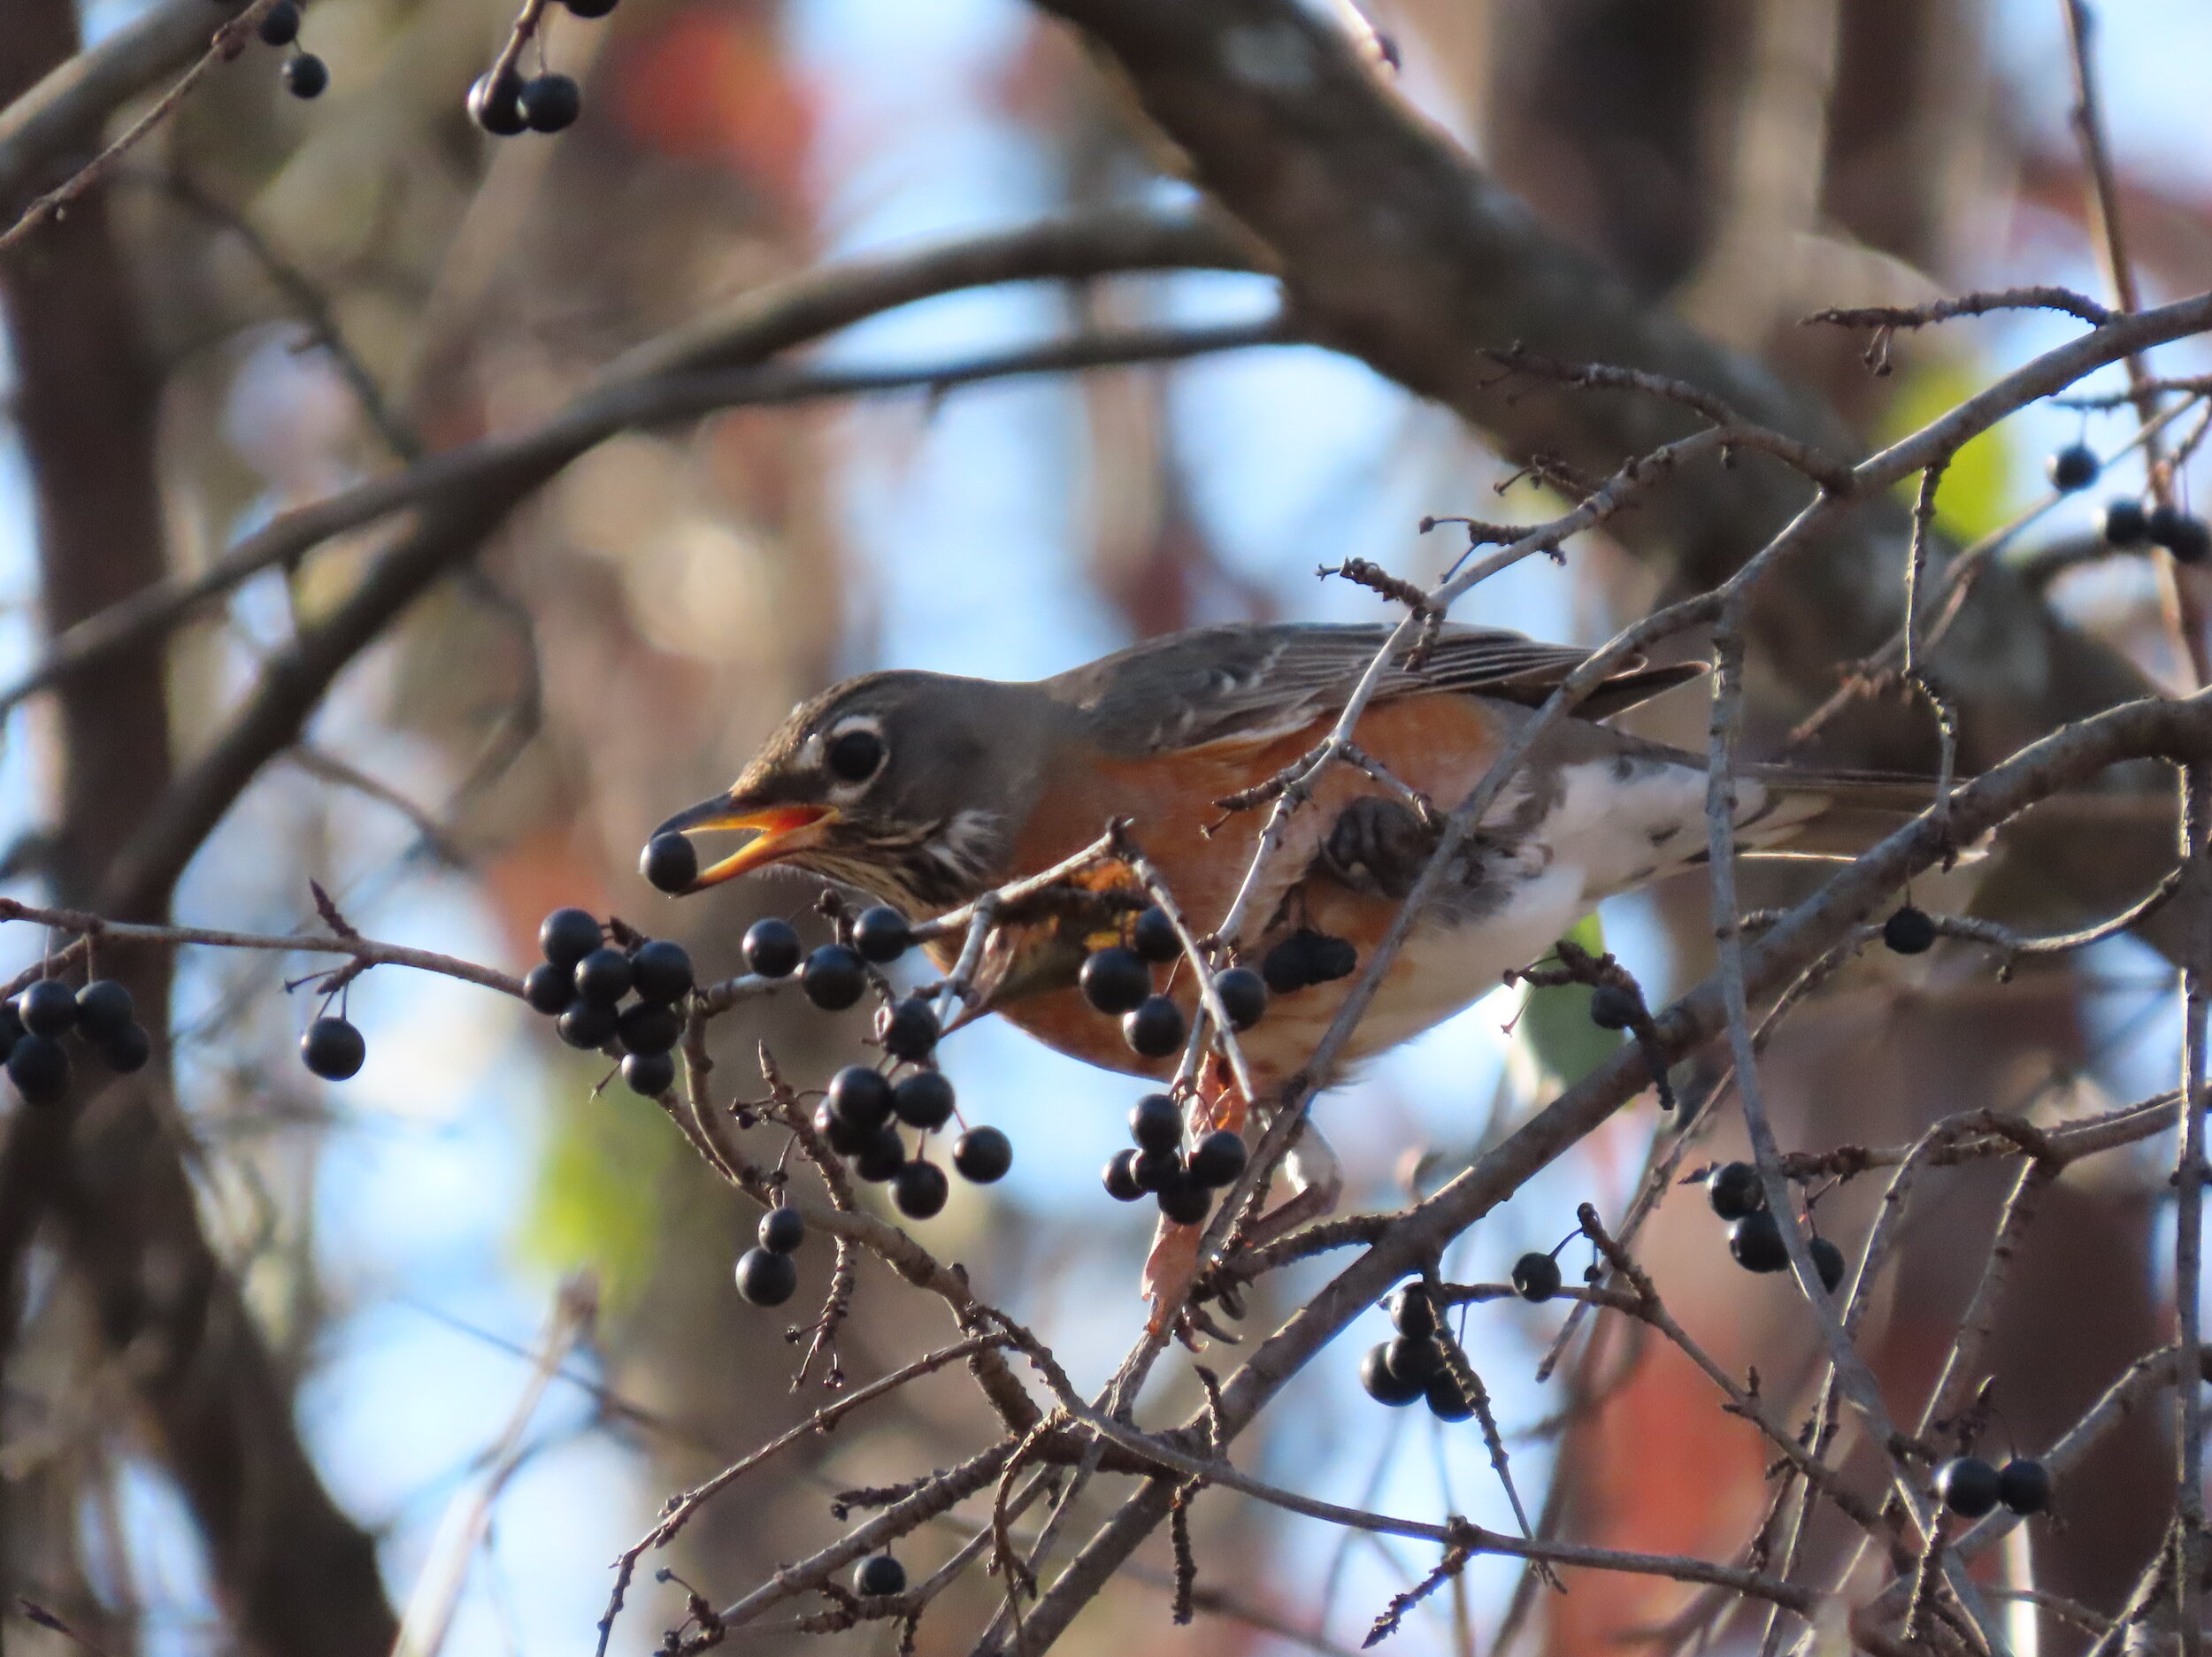 American robin eating berries